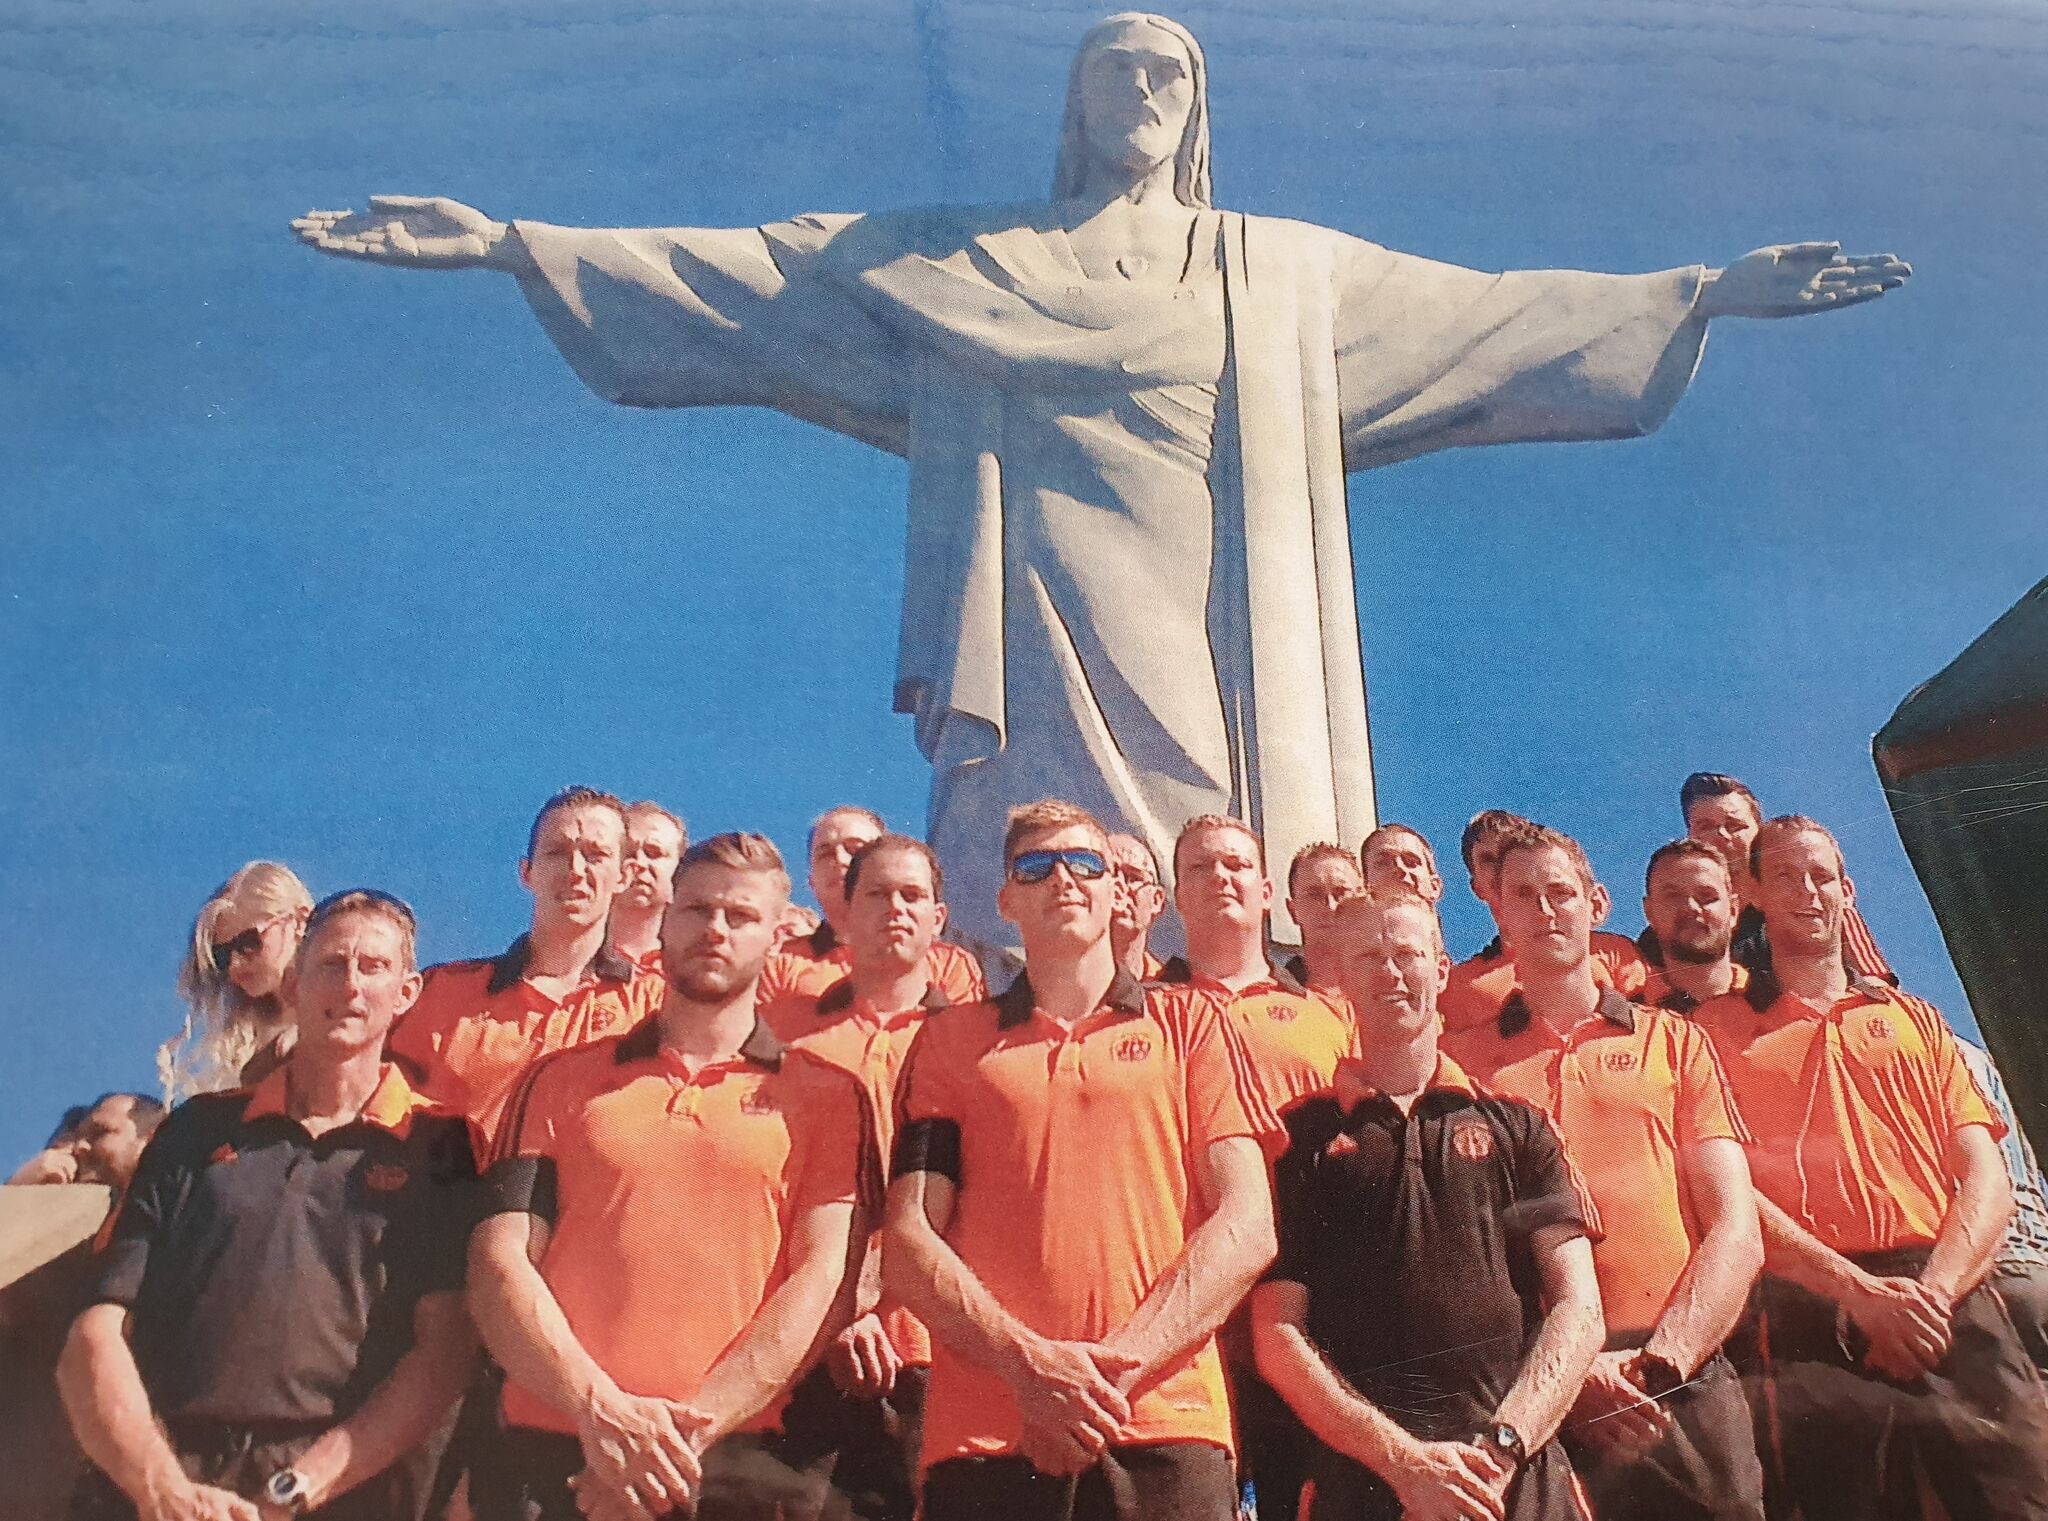 Mil Team 2014 Brazilie